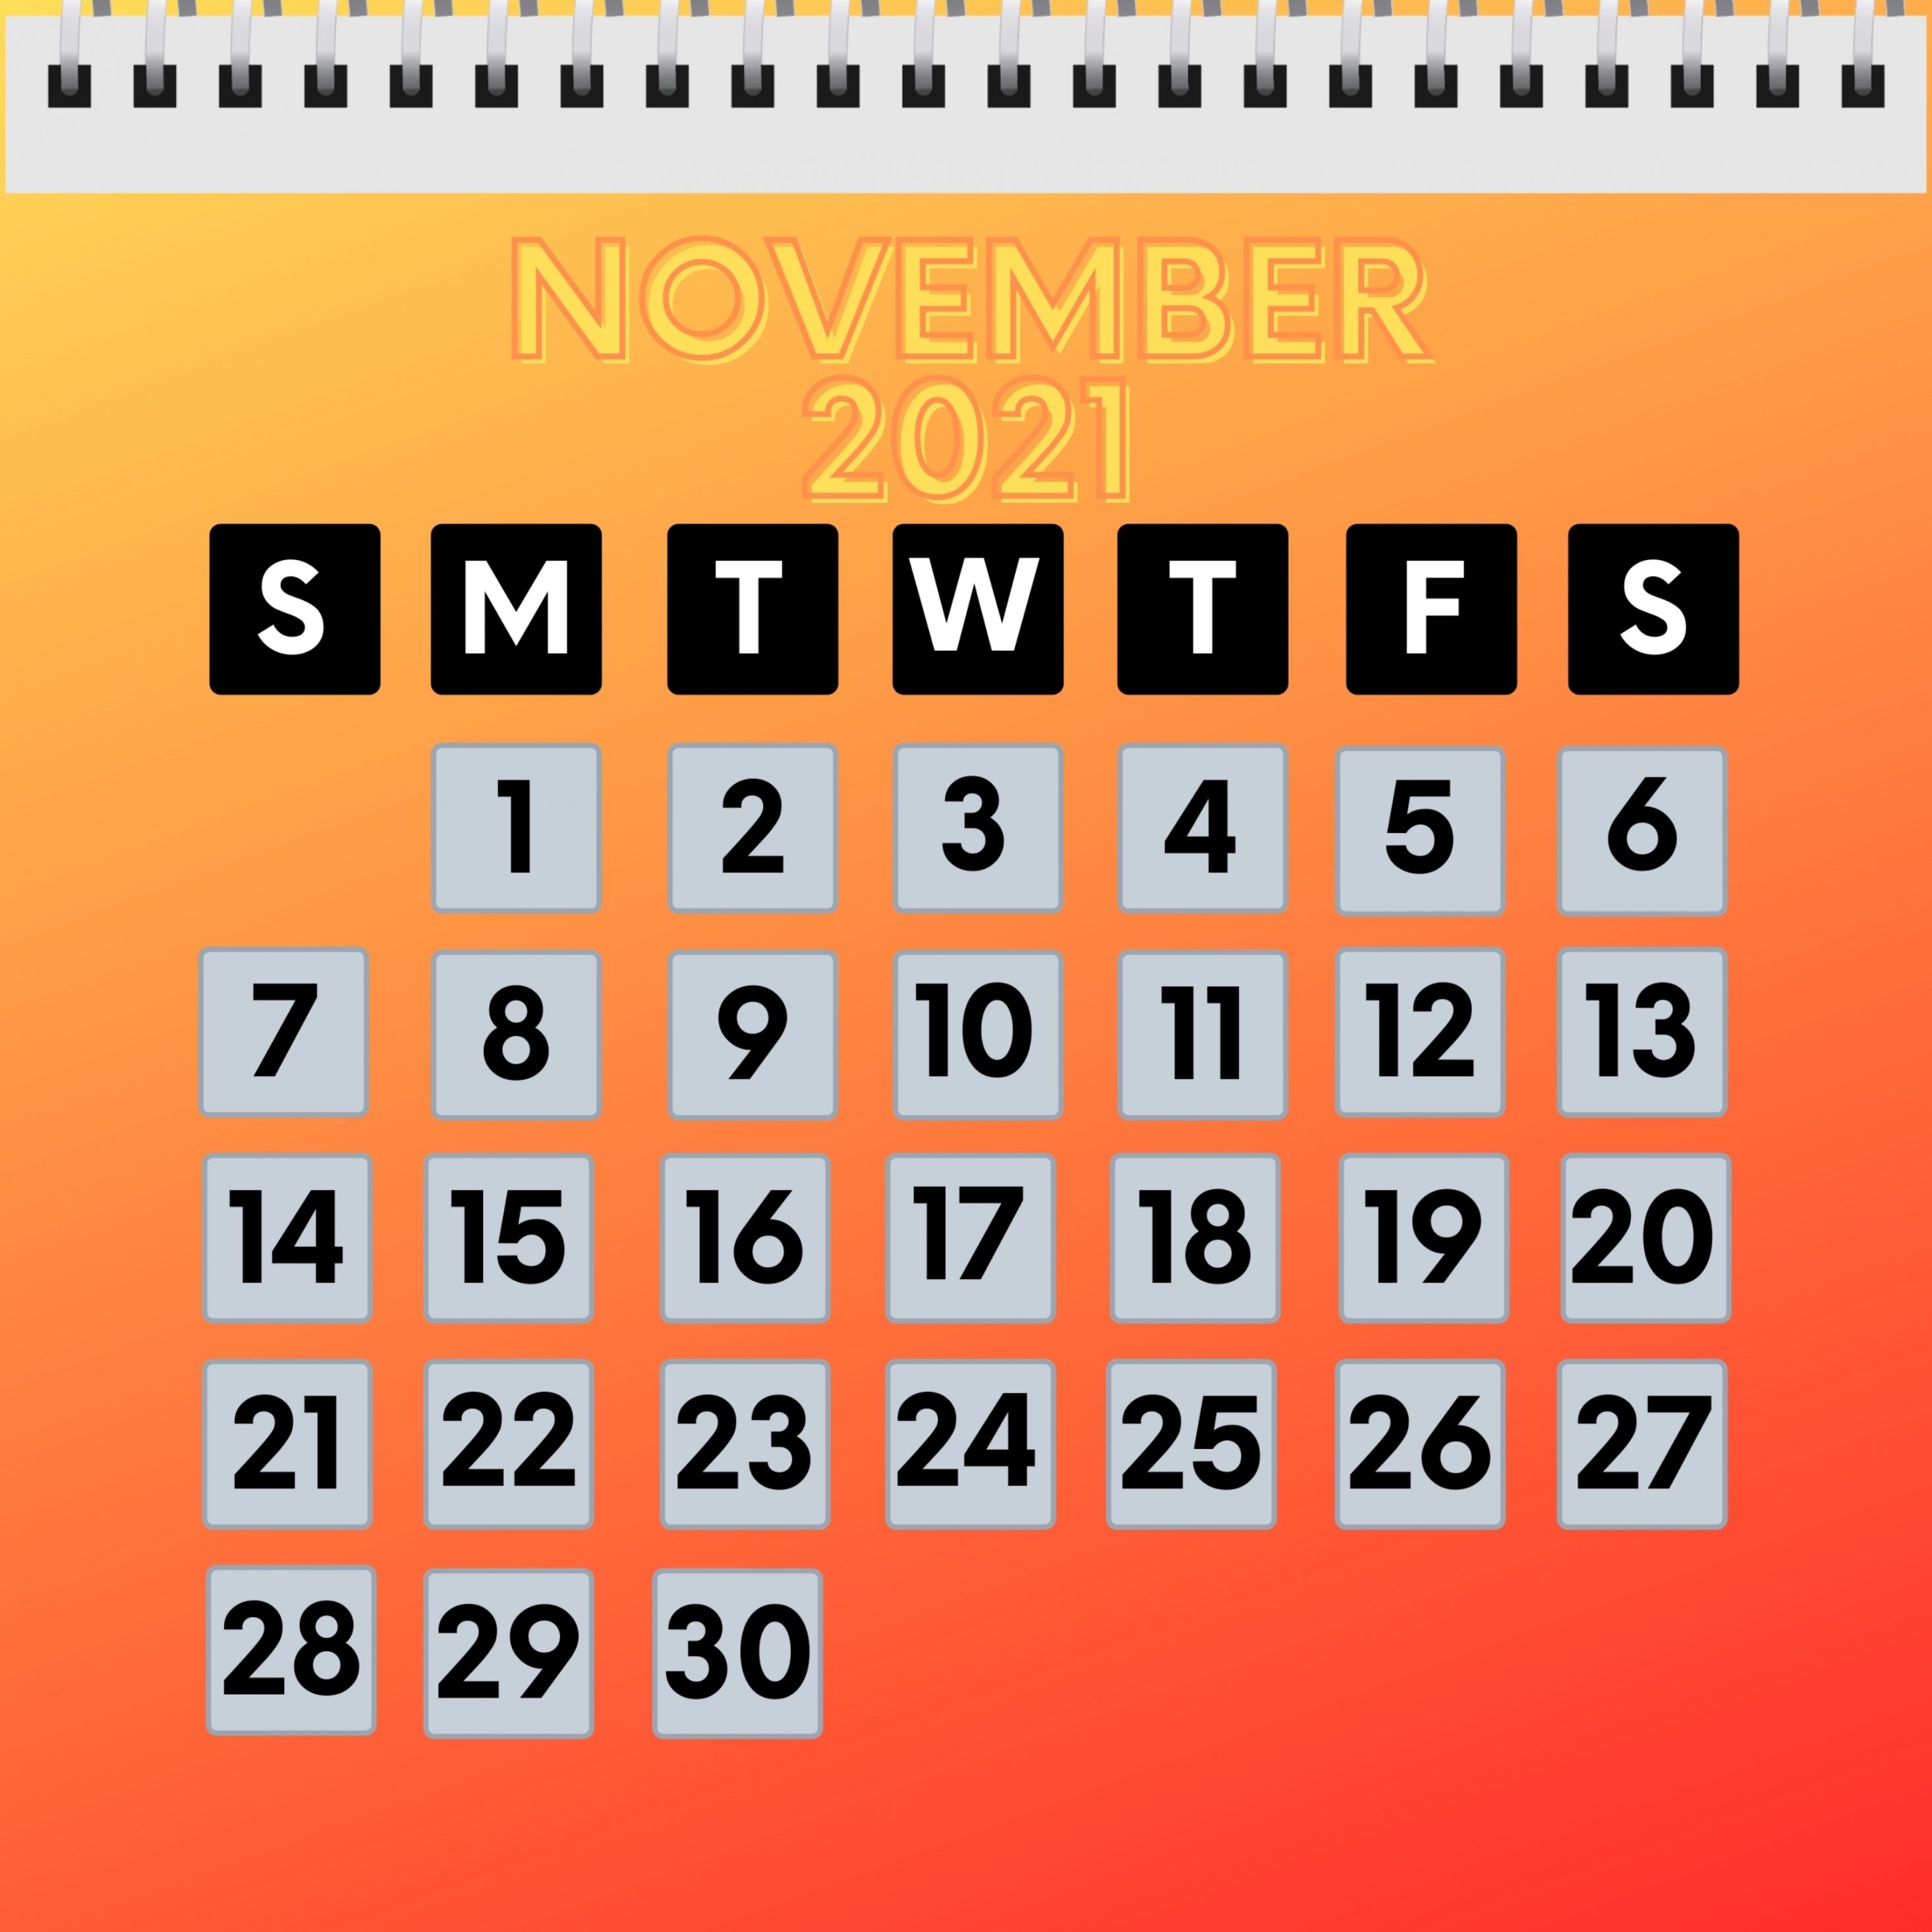 2932x2932 iPad Pro wallpaper 4k November 2021 Calendar iPad Wallpaper 2932x2932 pixels resolution